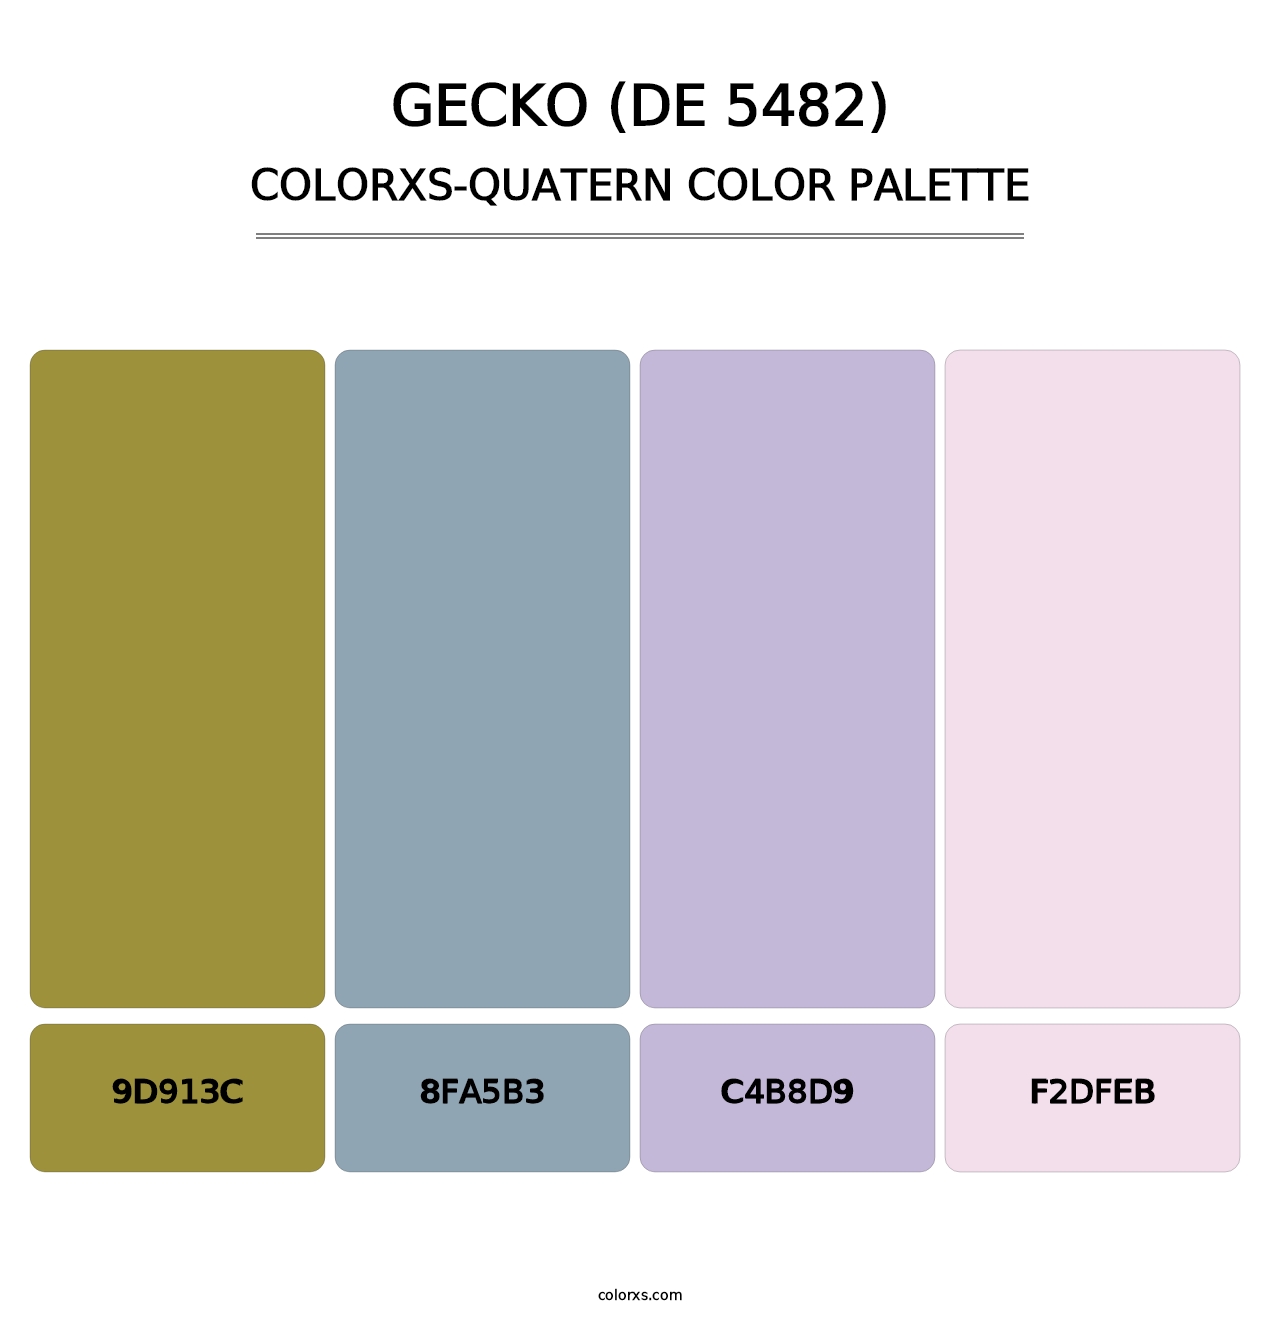 Gecko (DE 5482) - Colorxs Quatern Palette